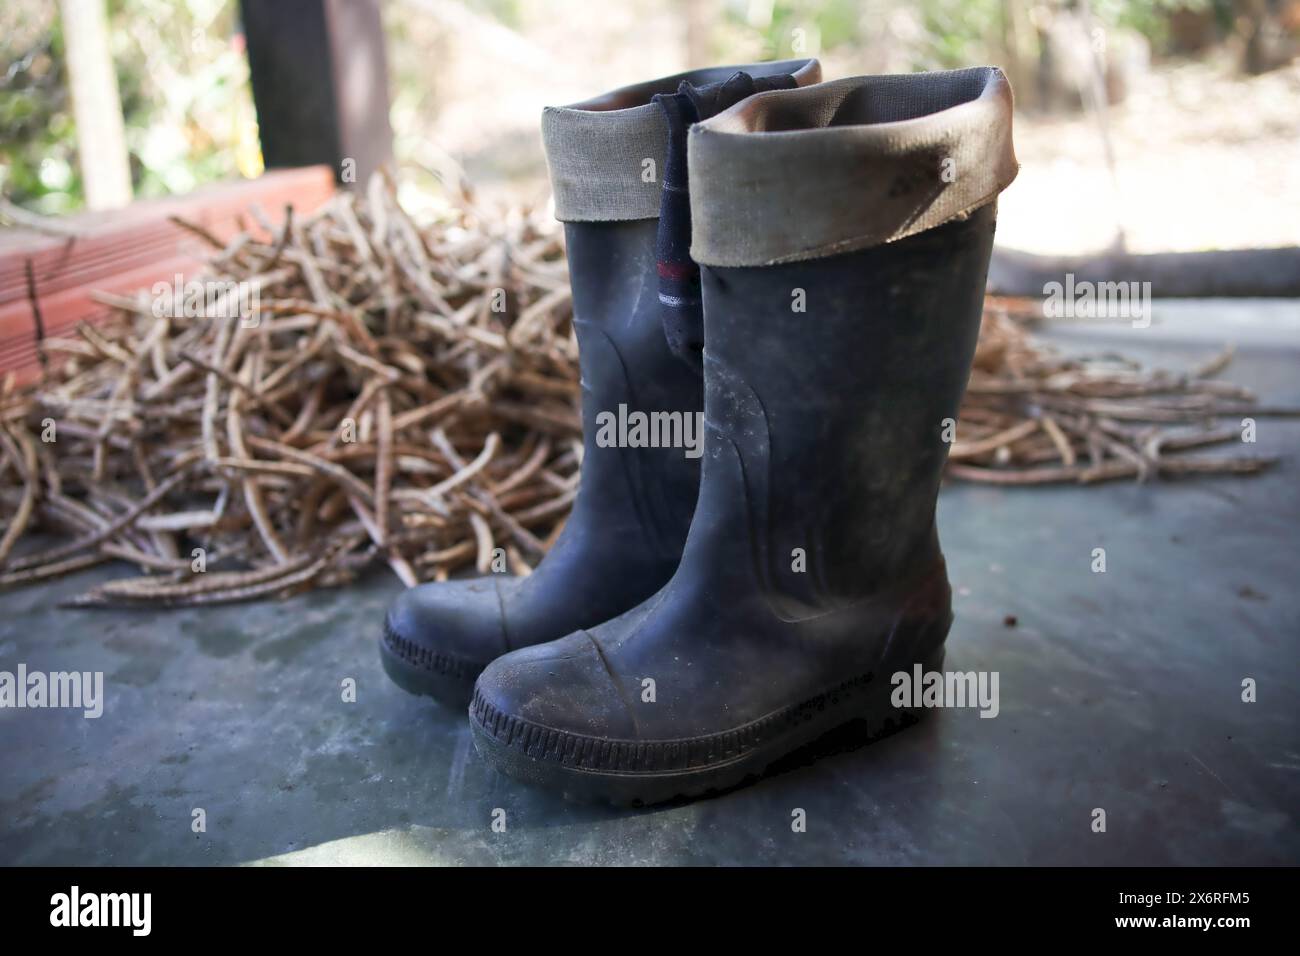 Gummistiefel für den Bauernhof. Schuhschuhe zum Schutz der Füße. Stockfoto